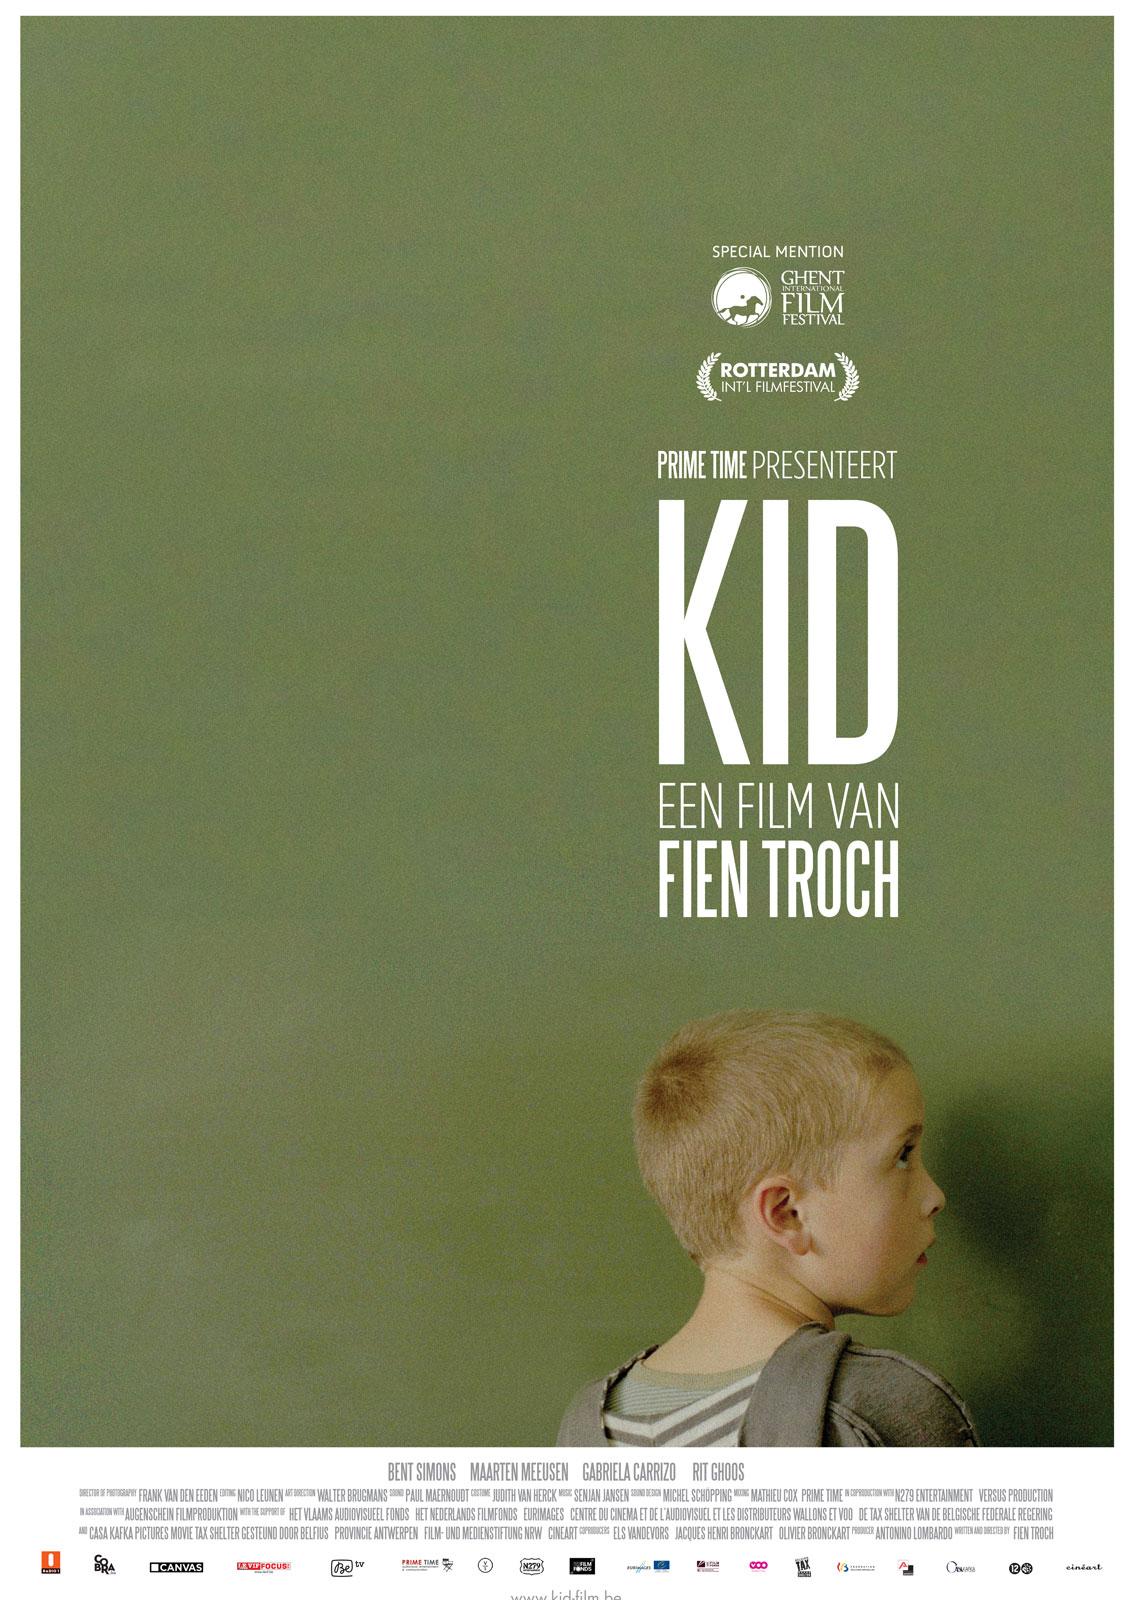 Poster of Fien Troch's film 'KID'